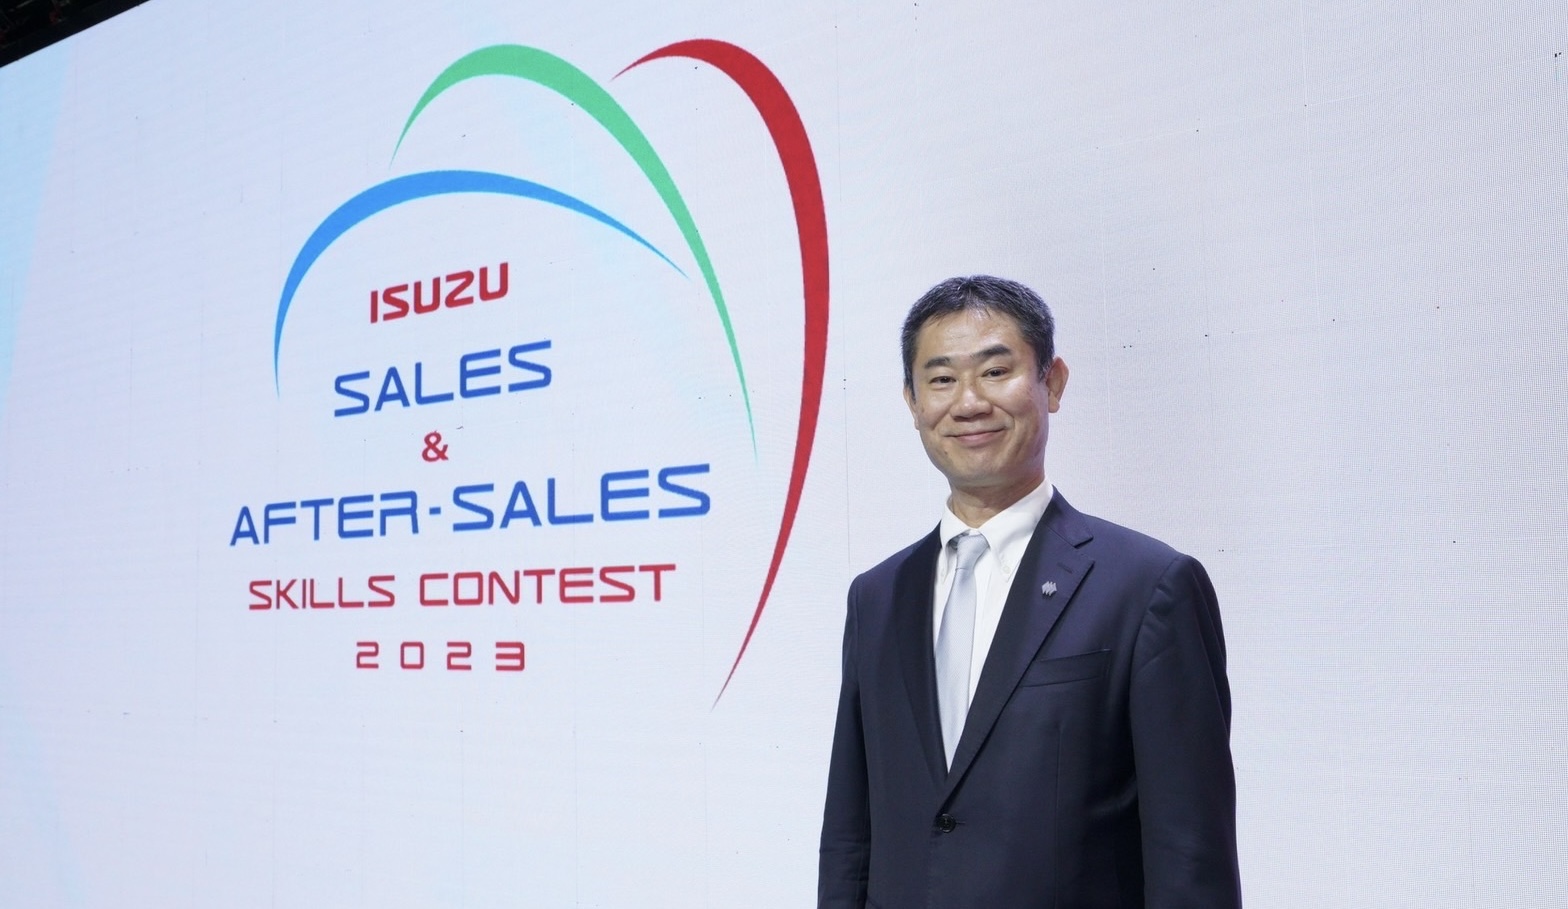 อีซูซุเดินหน้าจัดการแข่งขันทักษะด้านการขายและบริการหลังการขายประจำปี 2566 ยกระดับบุคลากรเพื่อความพอใจสูงสุดของลูกค้า